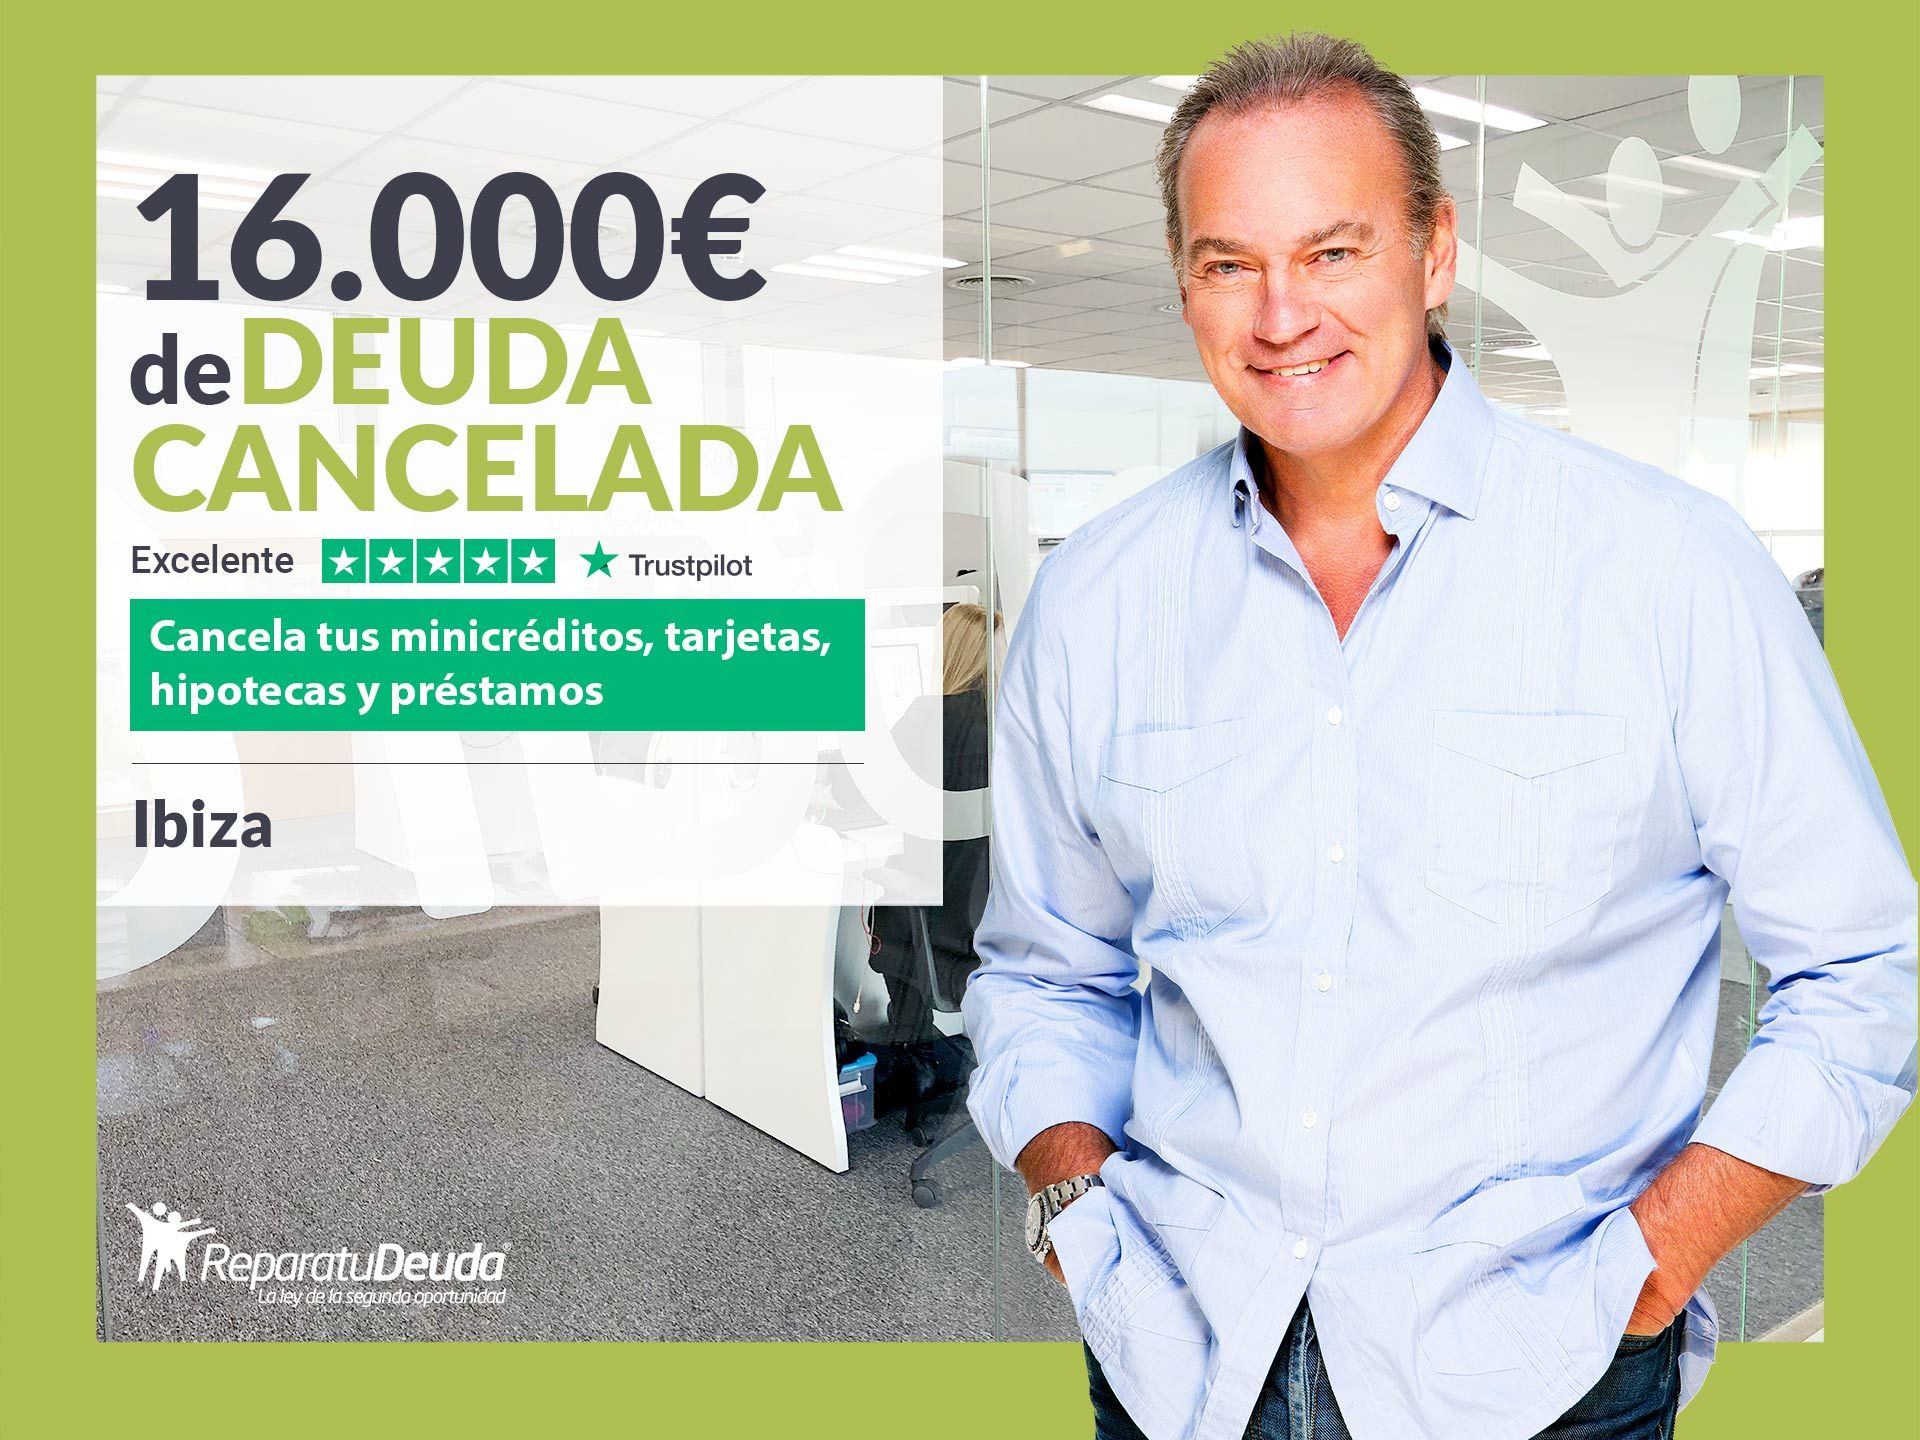 Repara tu Deuda Abogados cancela 16.000? en Ibiza (Baleares) con la Ley de Segunda Oportunidad